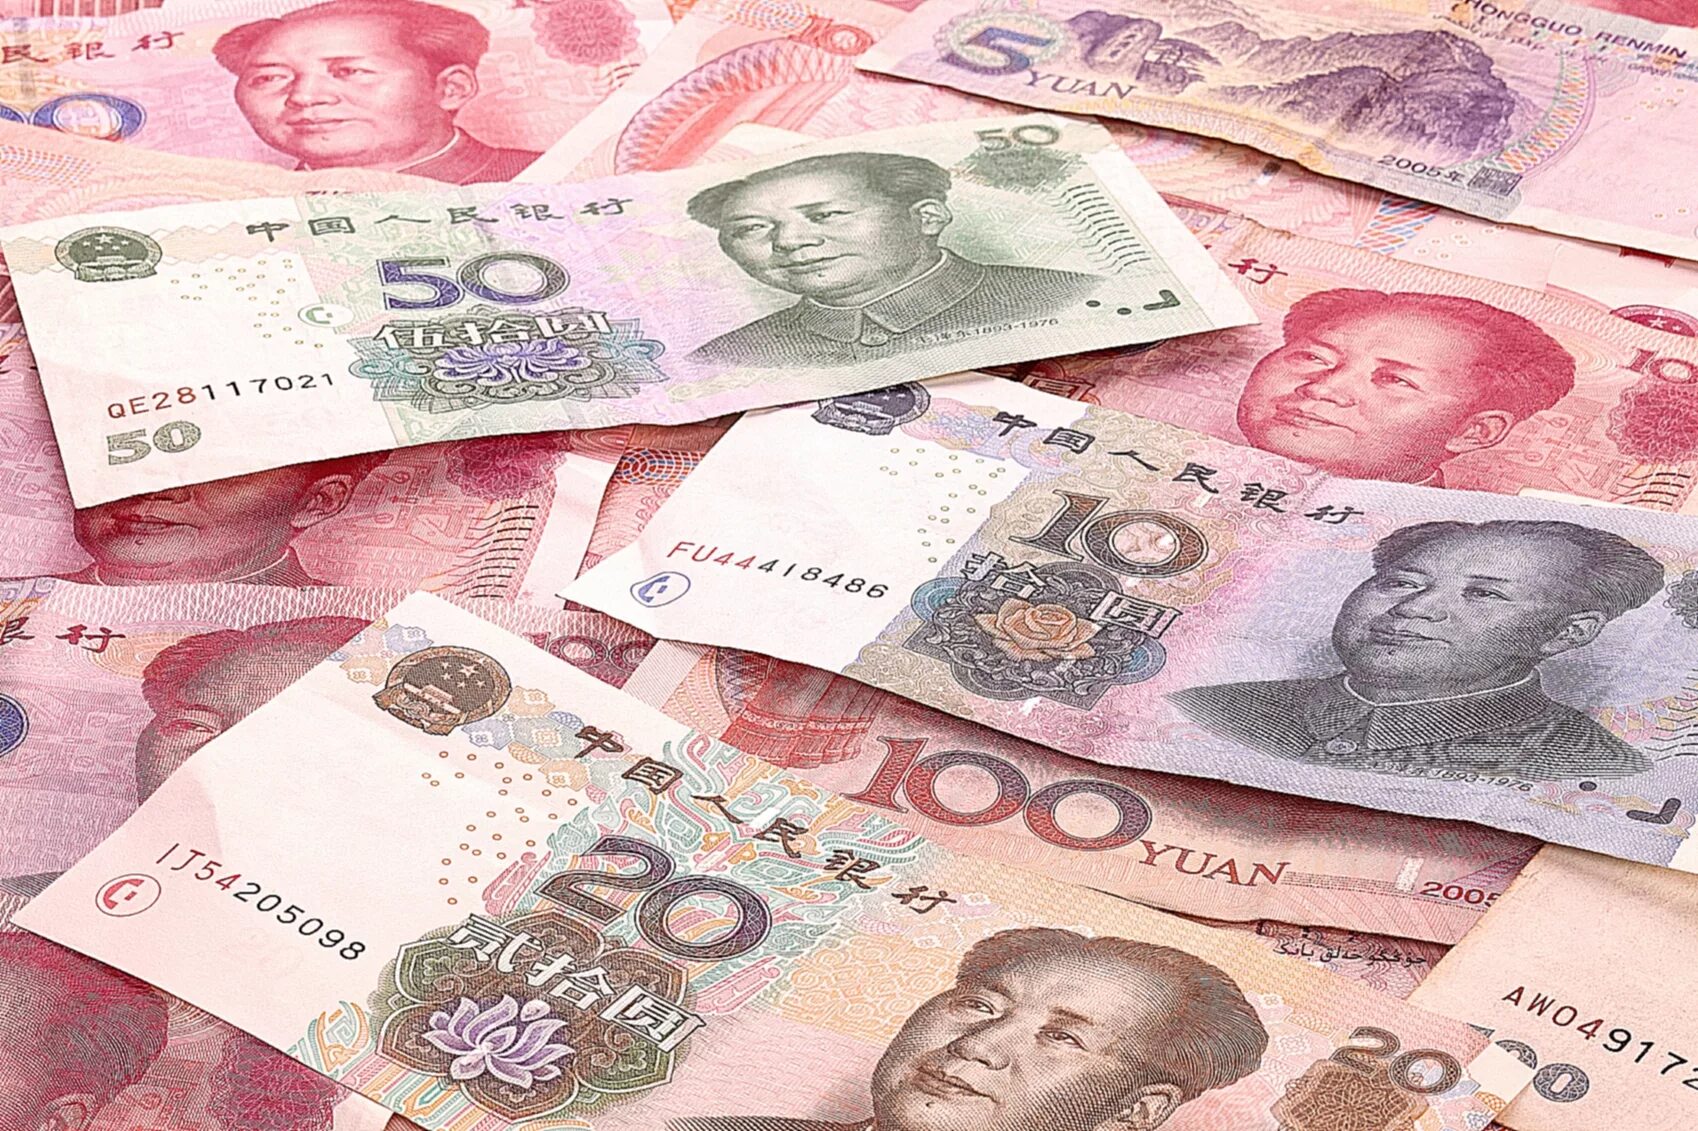 Обменять китайские юани. Валюта Китая юань. Деньги Китая юань. Китайский юань жэньминьби. Юань (валюта).